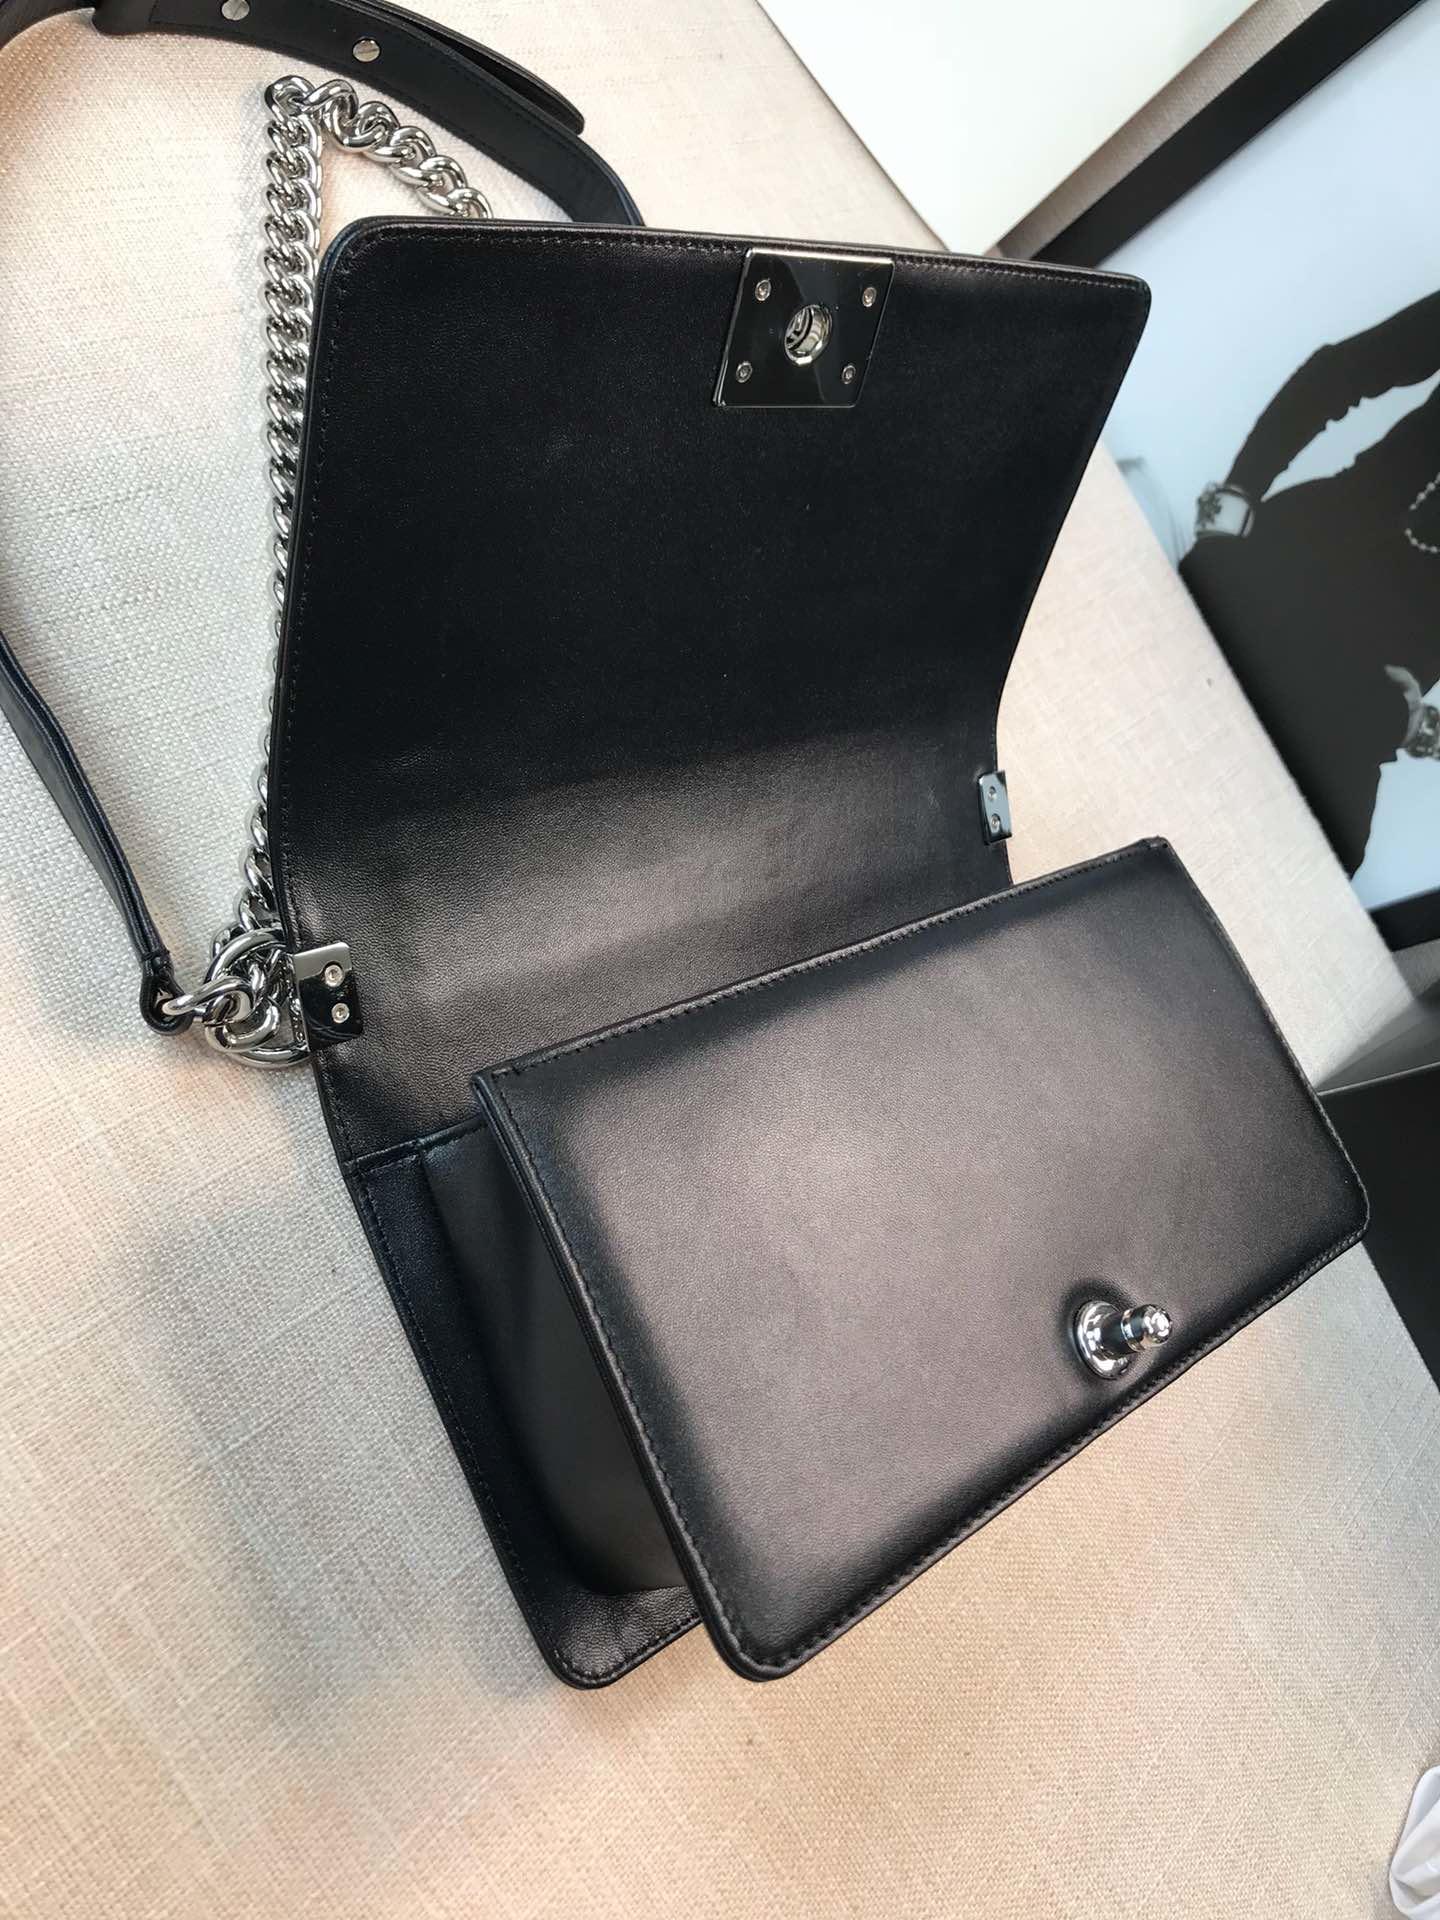 CC original lambskin boy medium handbag 67086 black(shiny metal)